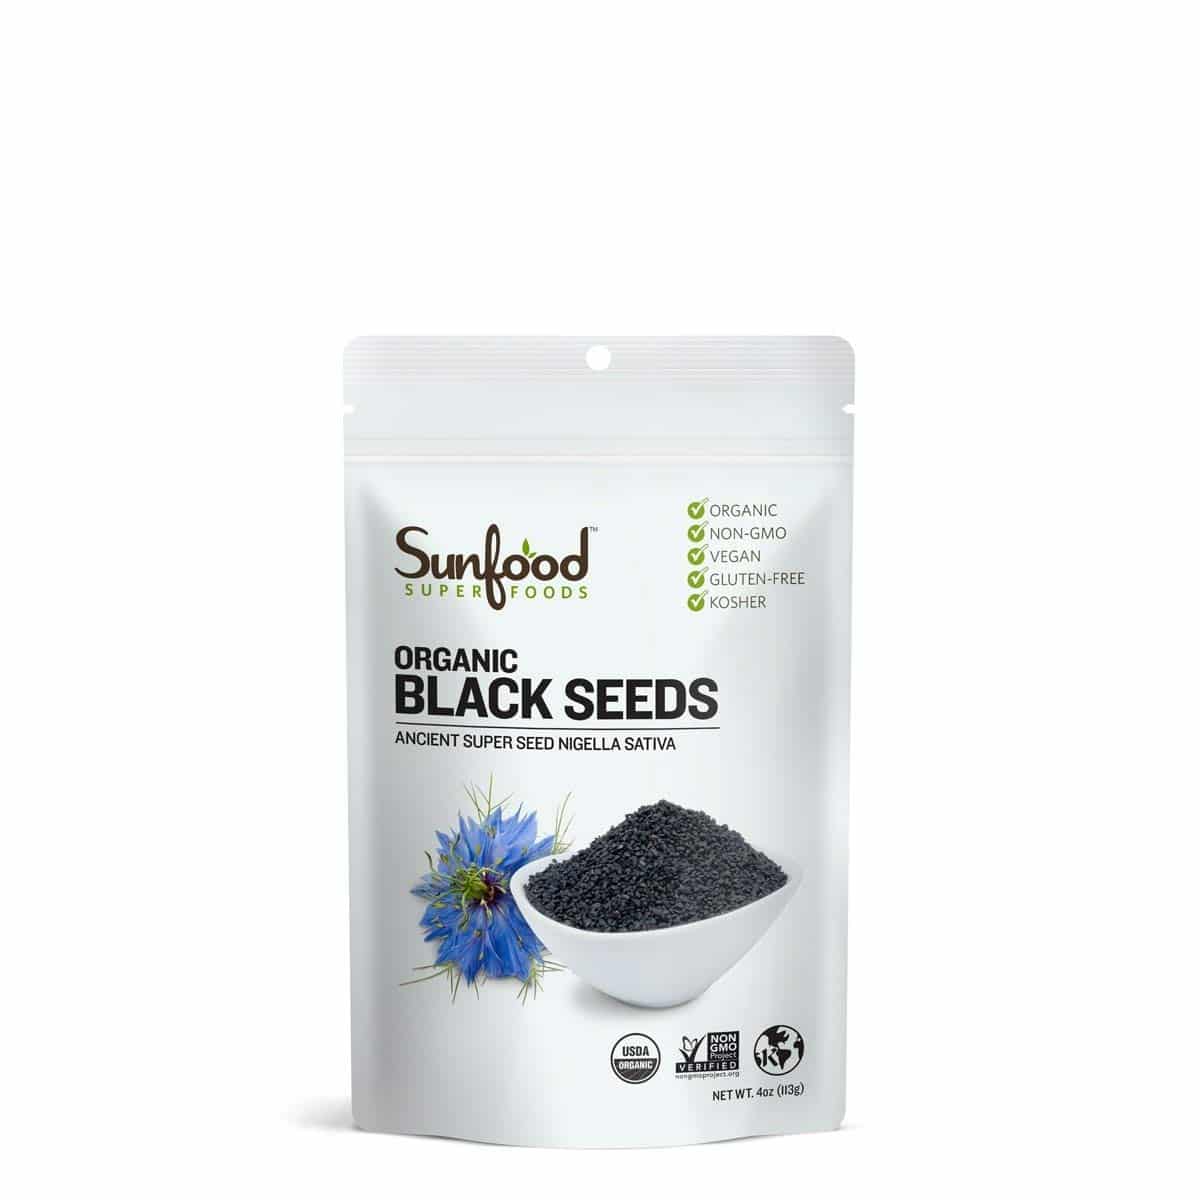 Sunfood Superfoods Black Seeds Organic